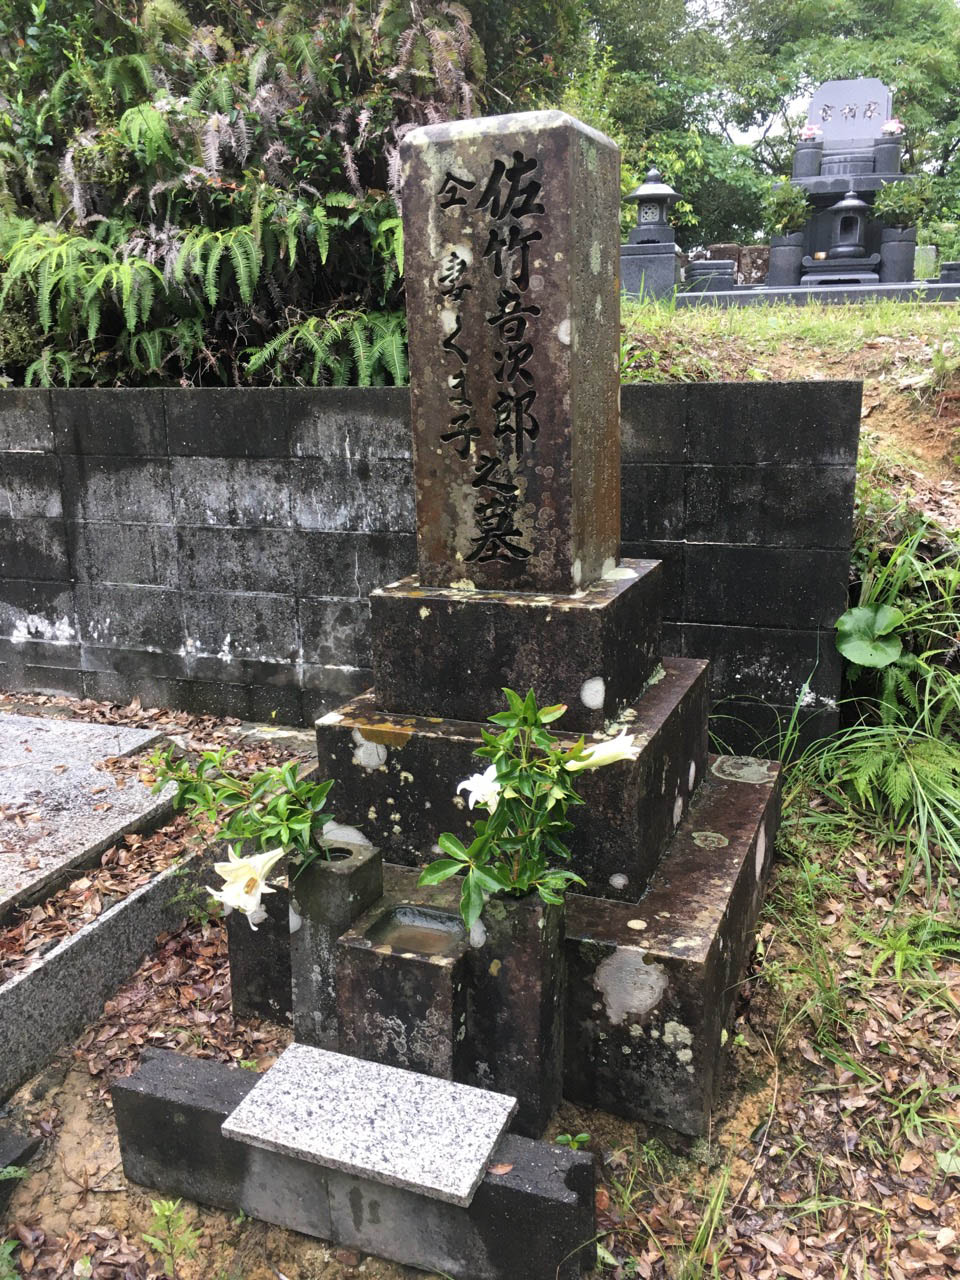 音次郎竹島墓地の墓石の写真。雨に濡れている。榊と野の百合が生けられている。